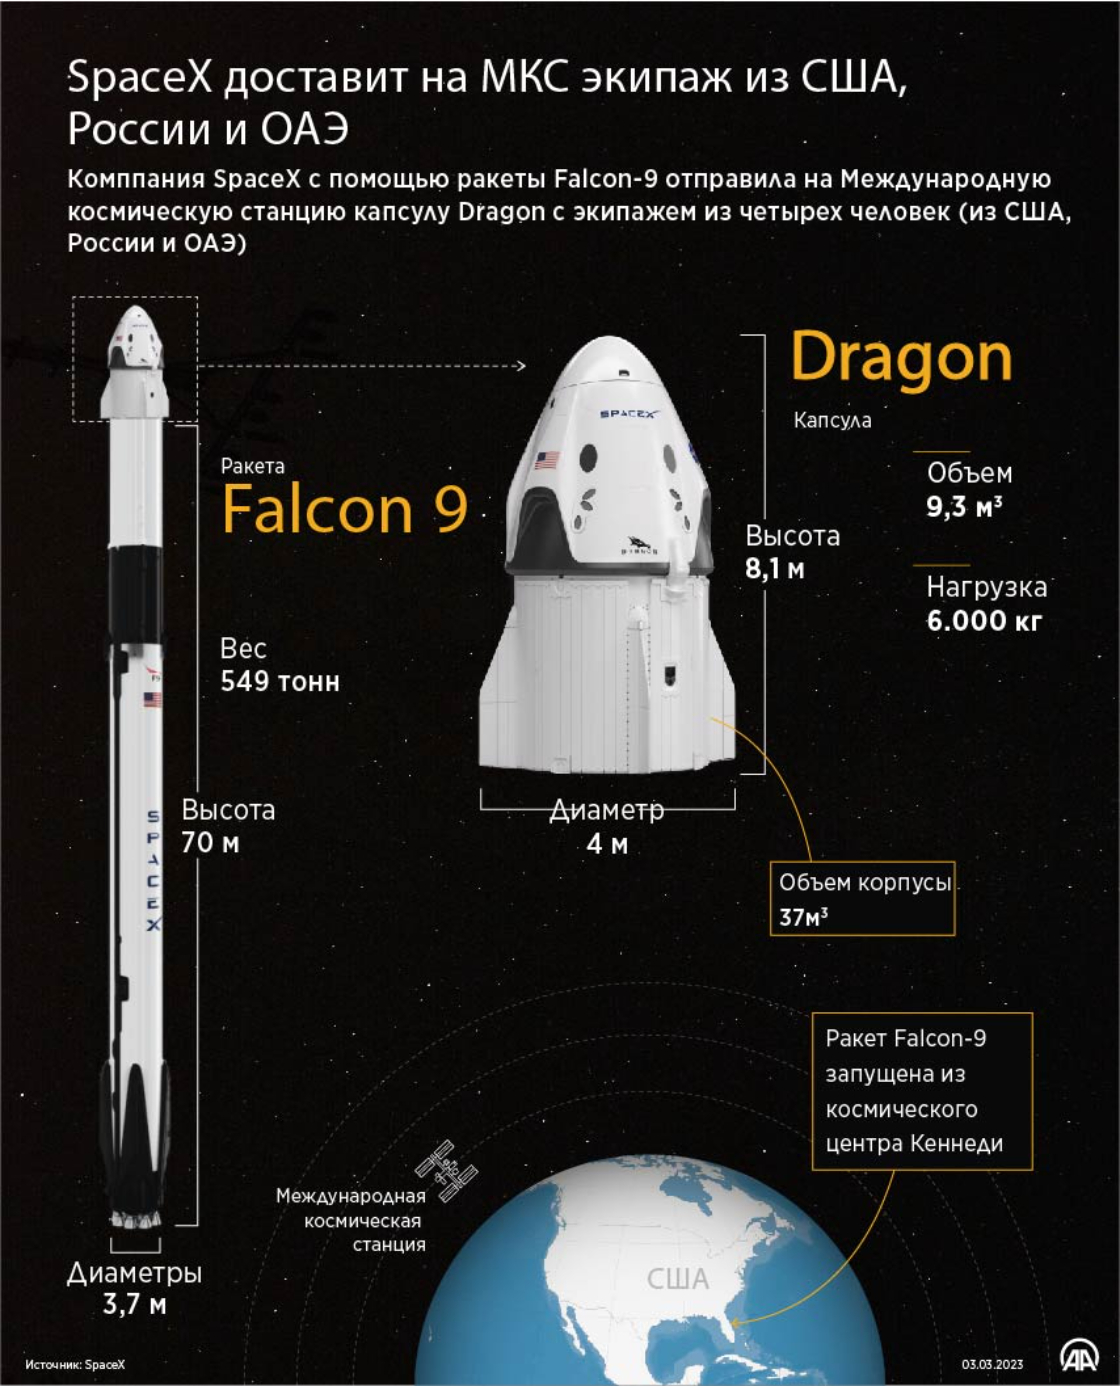 SpaceX доставит на МКС экипаж из США, России и ОАЭ